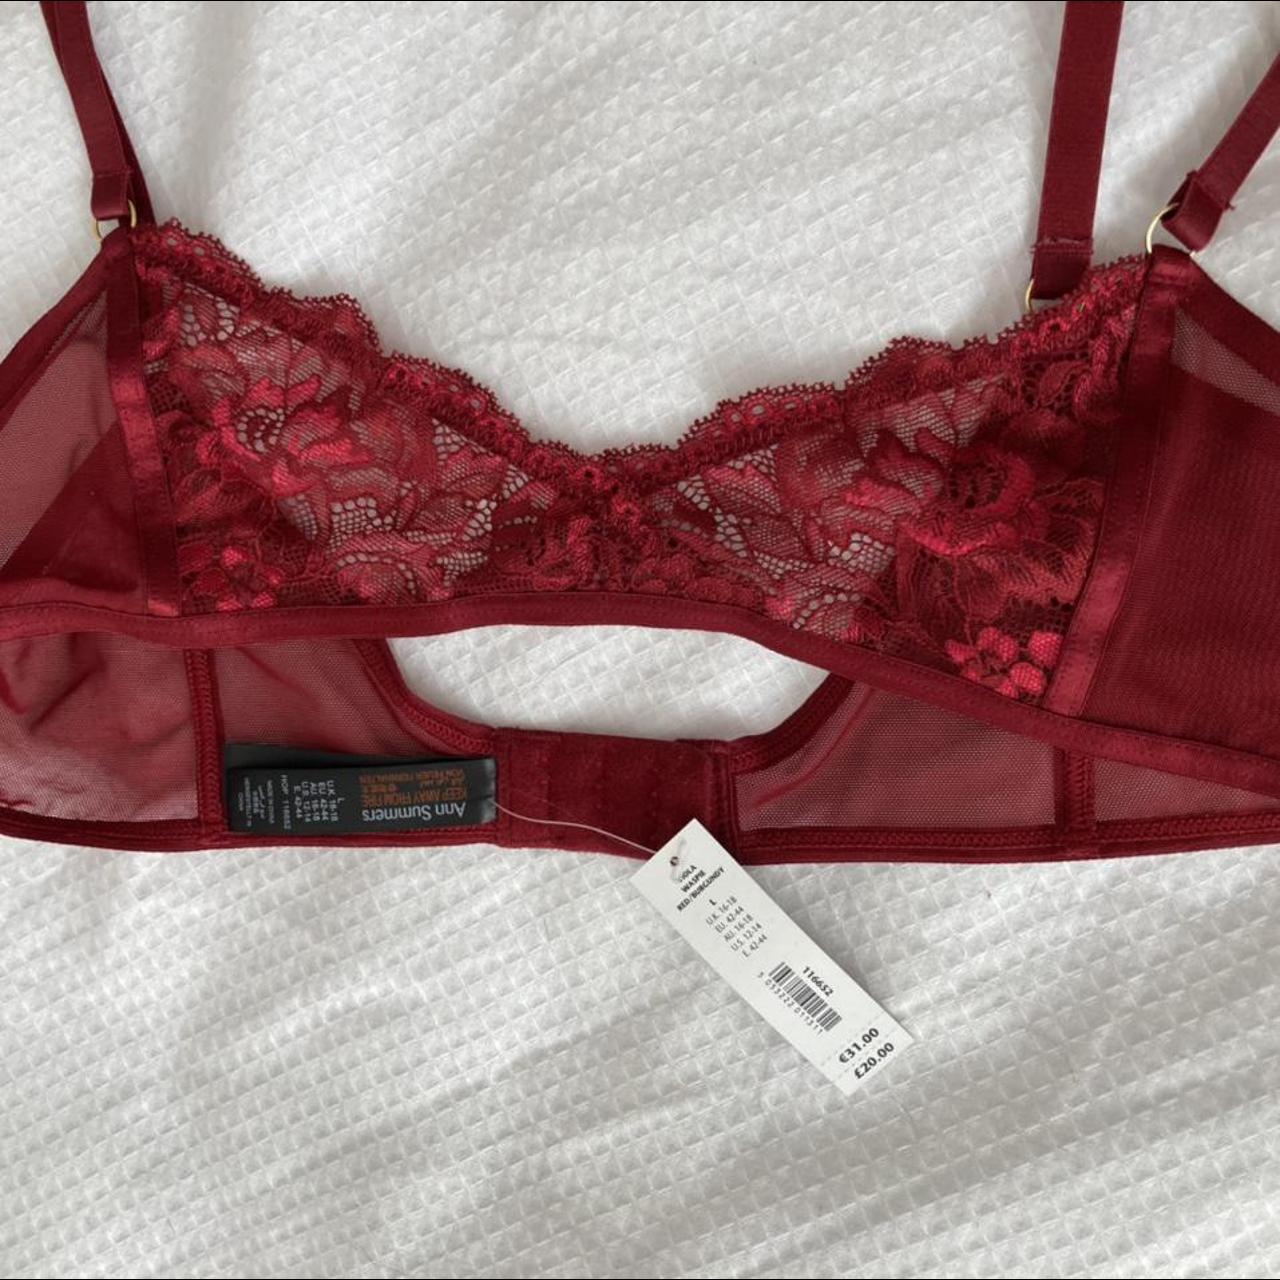 Ann Summers Women's Burgundy and Red Underwear | Depop